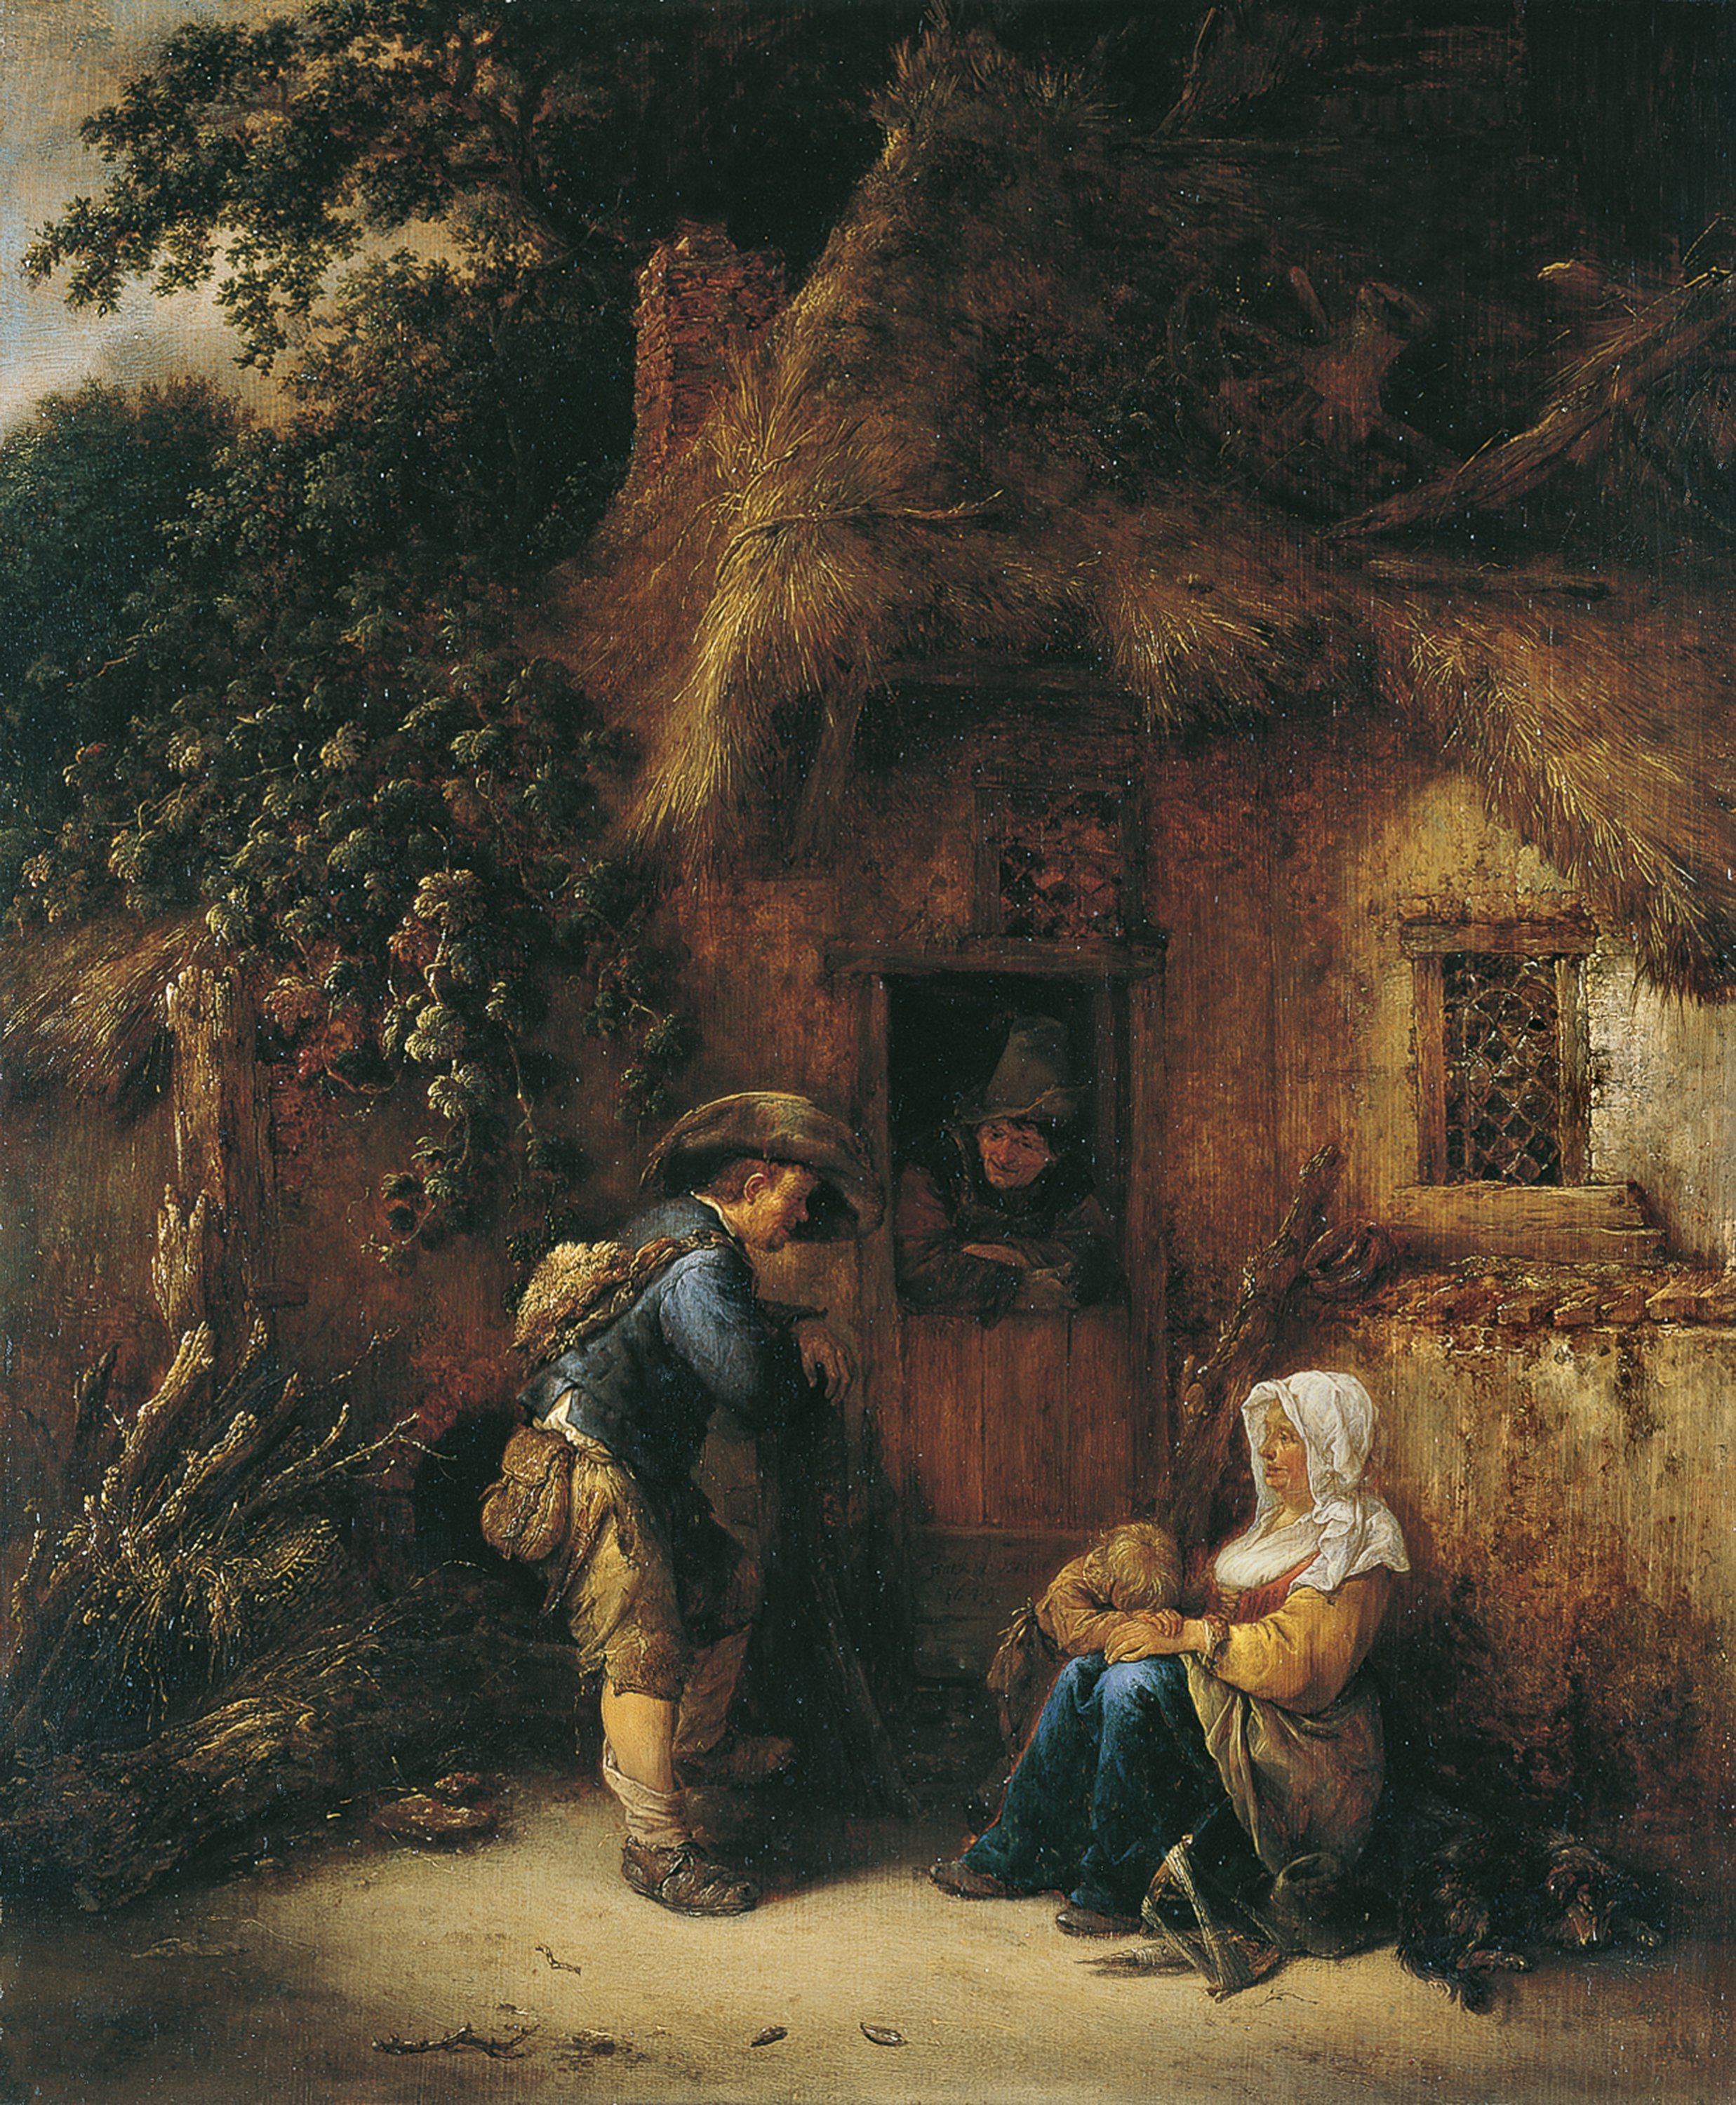 Traveller at a Cottage Door. Caminante a la puerta de una cabaña, 1649